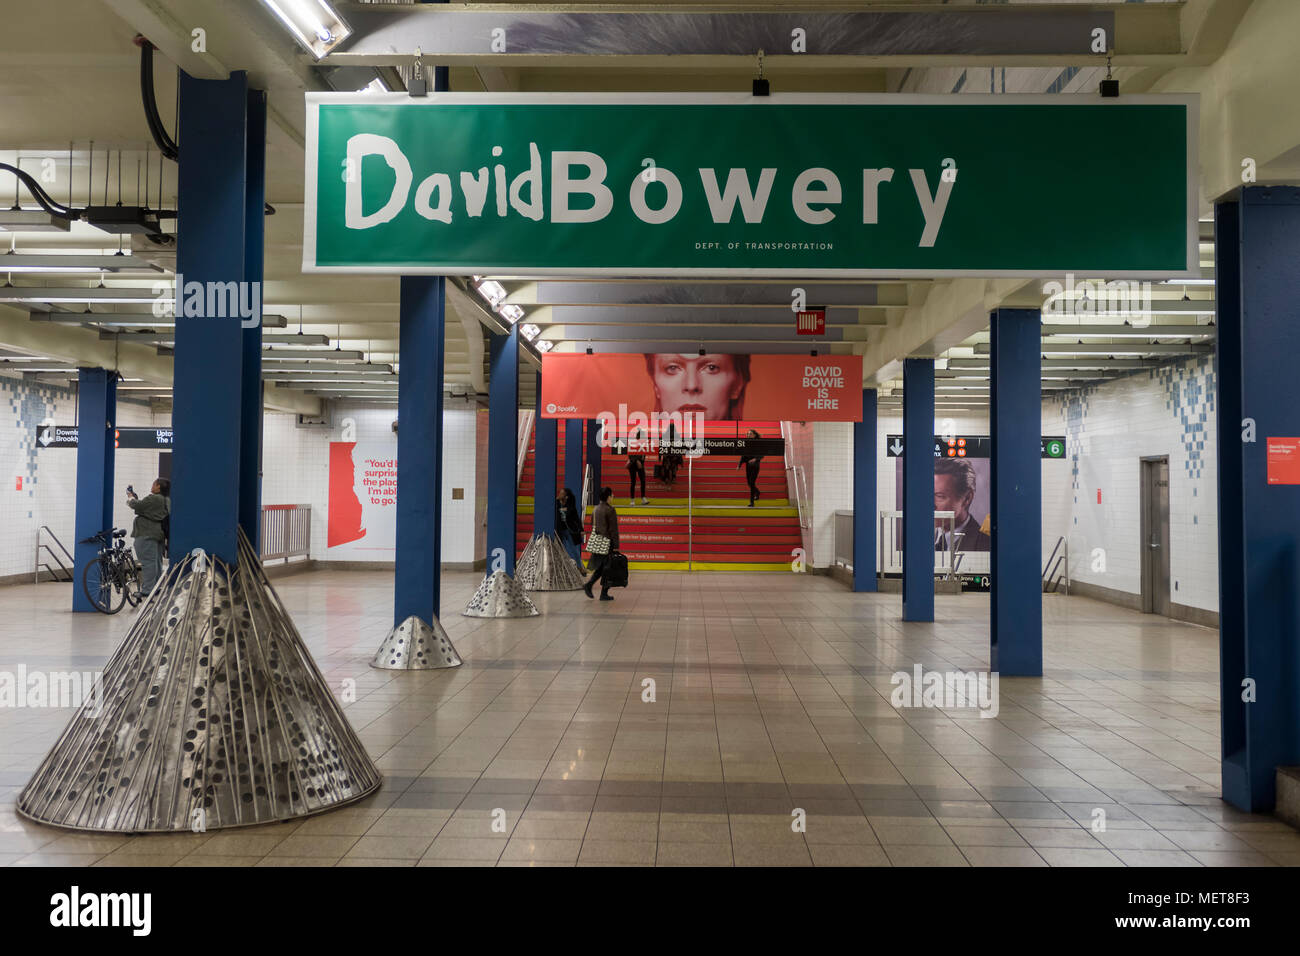 Nueva York, Estados Unidos. 121 abril, 2018. Imágenes de David Bowie en la entreplanta de la estación de metro de Broadway-Lafayette. La instalación, sponsorsed por Spotify, se llevó a cabo en colaboración con la exposición 'David Bowie' en el Brooklyn. El metro está a sólo unas manzanas de instalación desde donde la tarde rock star vivió en Soho. El arte se exhibirá hasta mediados de mayo. ©Stacy Walsh Rosenstock Foto de stock